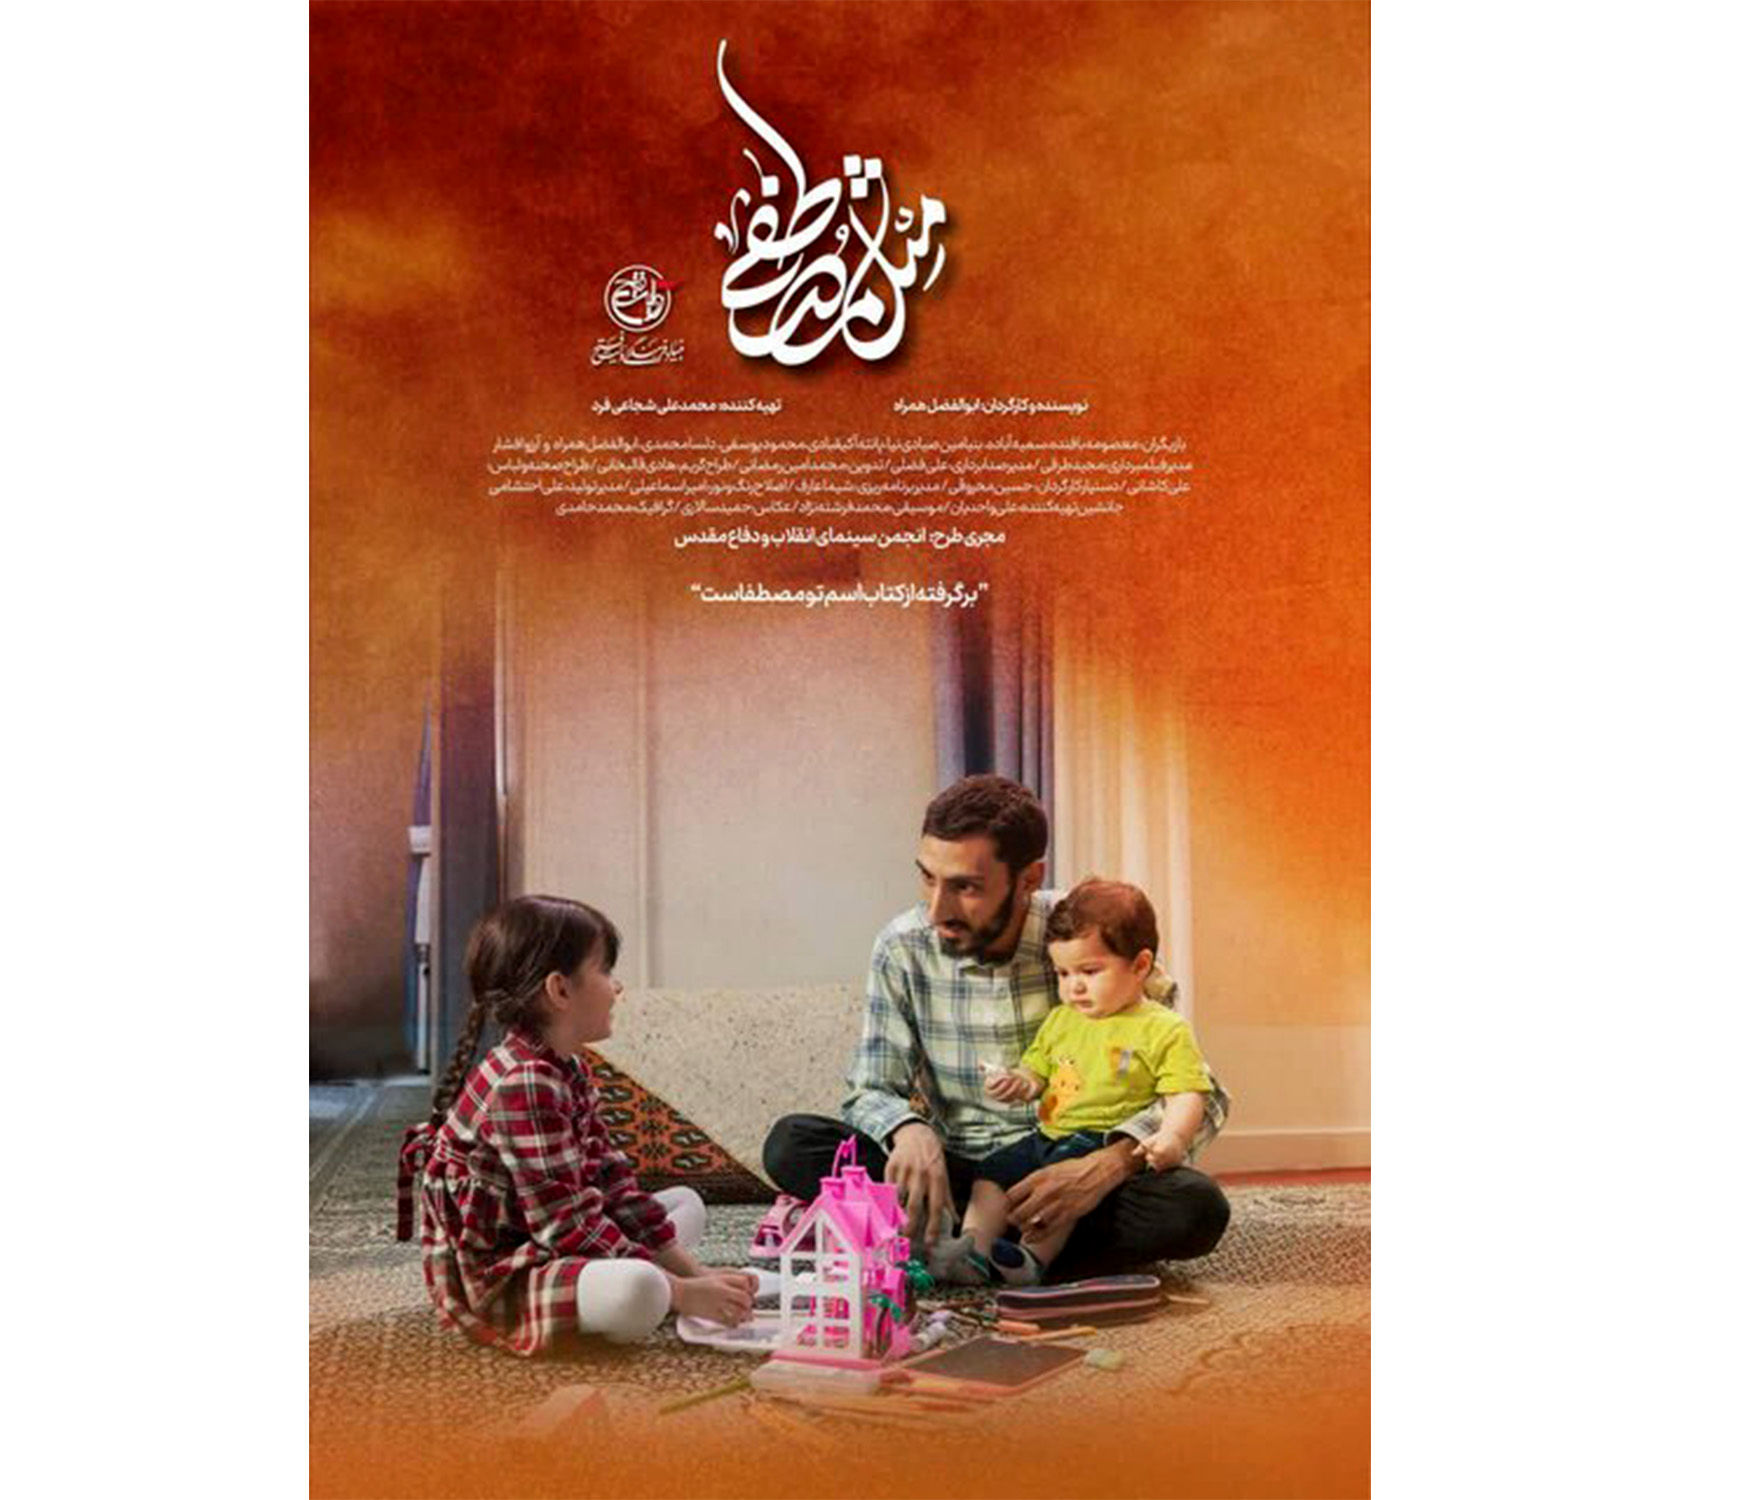 فیلم کوتاهی براساس زندگی شهید مصطفی صدرزاده تولید شد